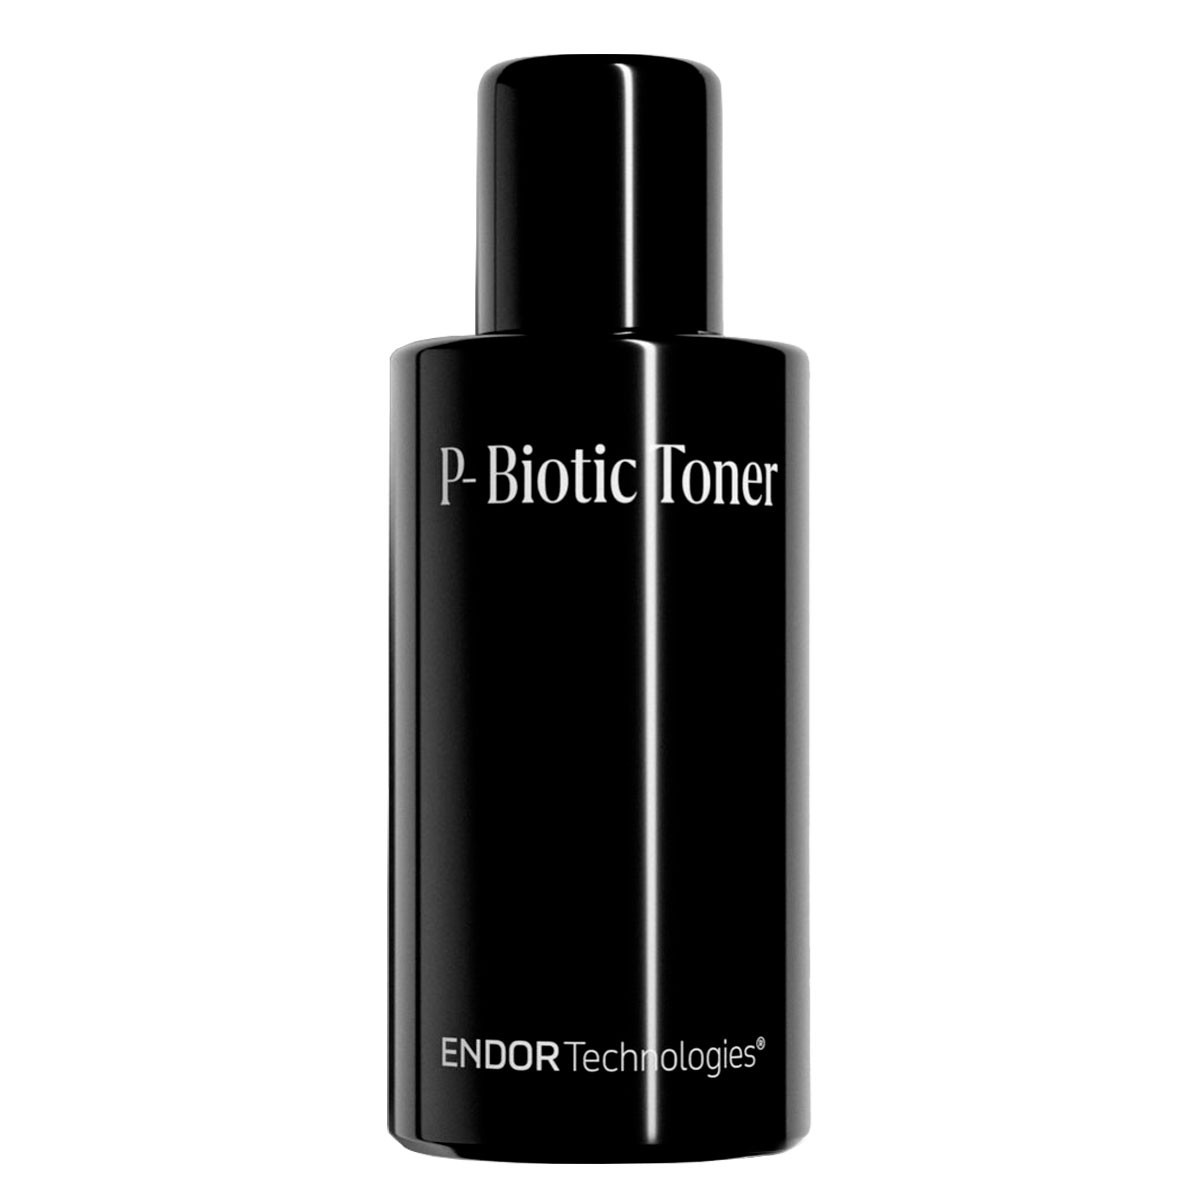 P-Biotic Toner Endor